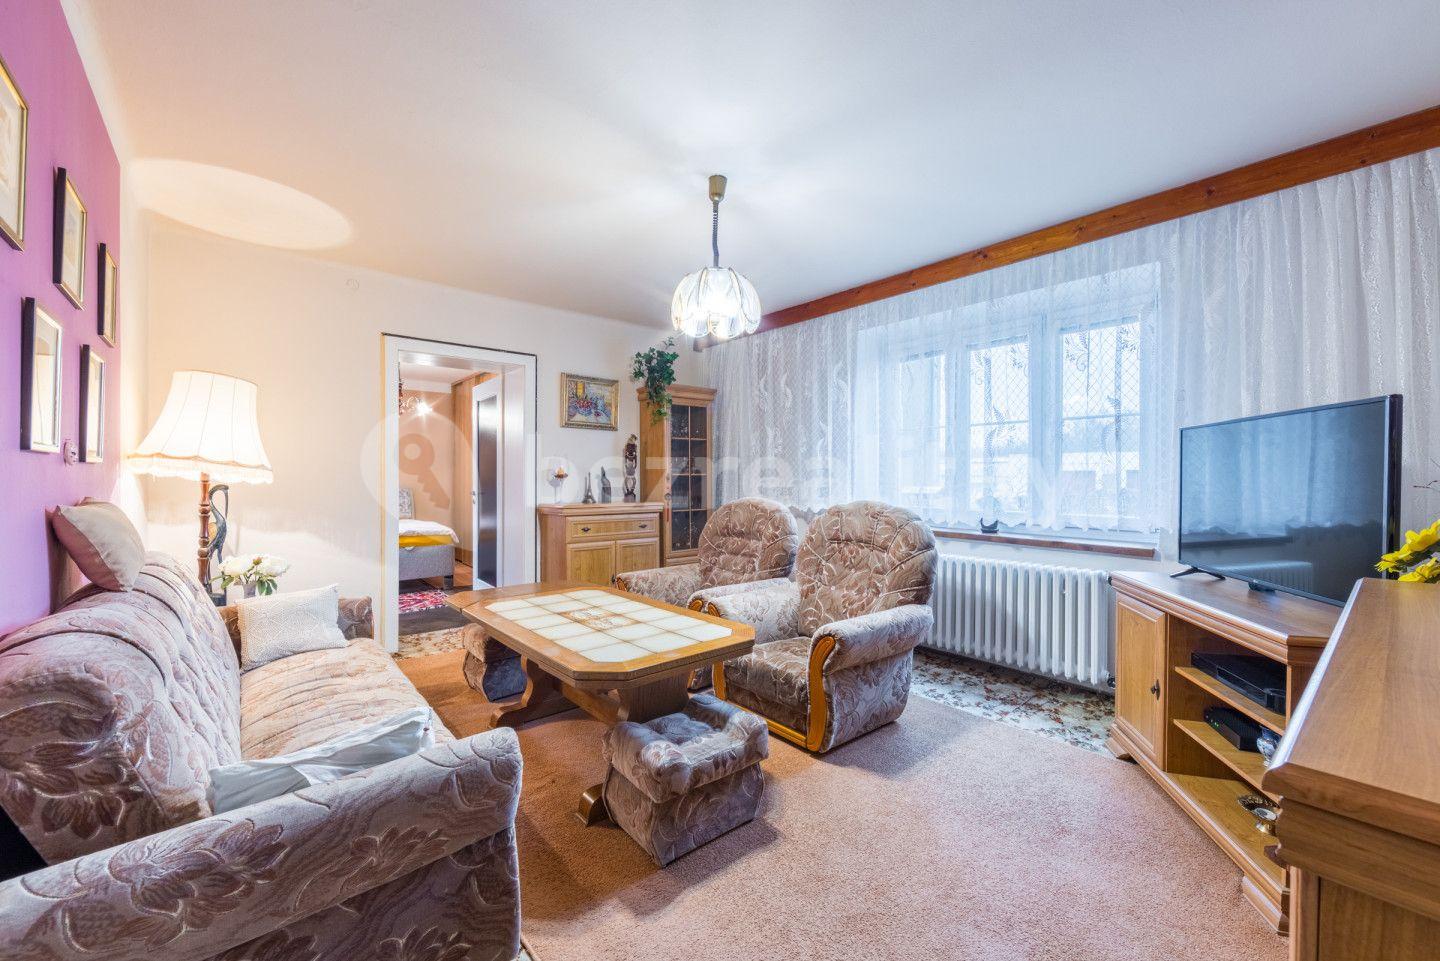 4 bedroom flat for sale, 81 m², Severní, Karlovy Vary, Karlovarský Region